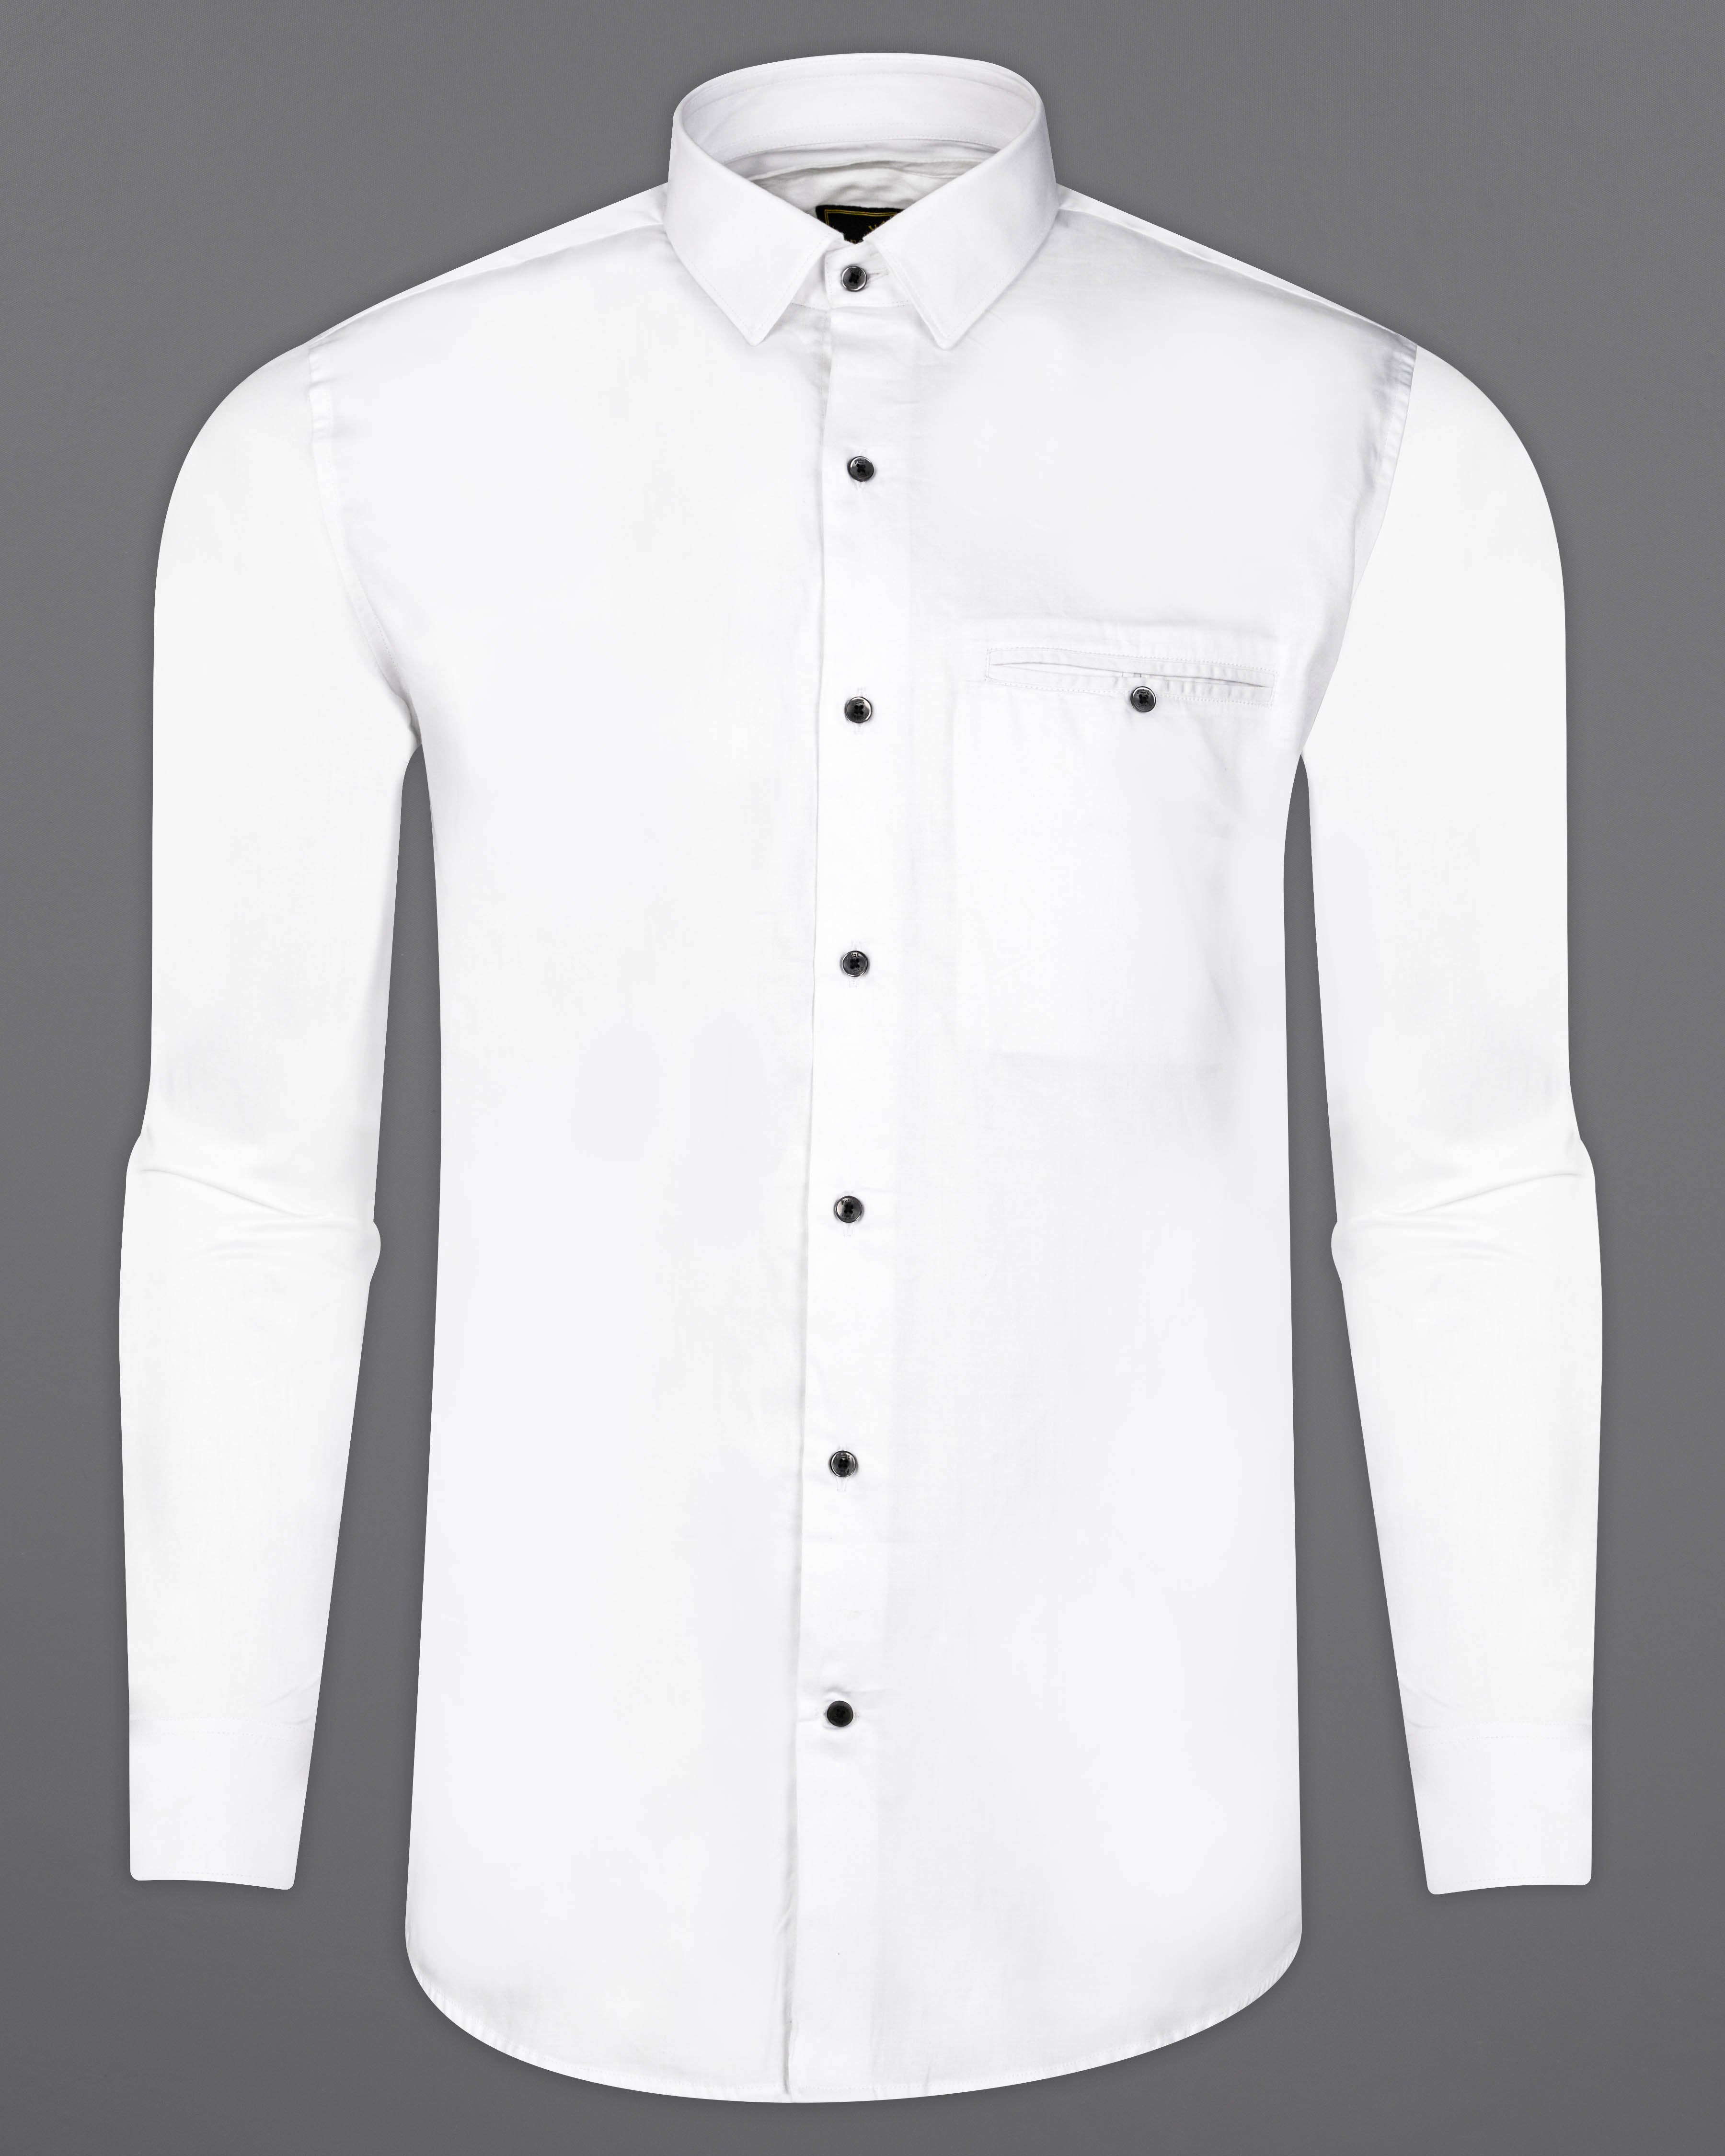 Bright White Subtle Sheen Super Soft Premium Cotton Shirt 9657-BLK-P597-38, 9657-BLK-P597-H-38, 9657-BLK-P597-39, 9657-BLK-P597-H-39, 9657-BLK-P597-40, 9657-BLK-P597-H-40, 9657-BLK-P597-42, 9657-BLK-P597-H-42, 9657-BLK-P597-44, 9657-BLK-P597-H-44, 9657-BLK-P597-46, 9657-BLK-P597-H-46, 9657-BLK-P597-48, 9657-BLK-P597-H-48, 9657-BLK-P597-50, 9657-BLK-P597-H-50, 9657-BLK-P597-52, 9657-BLK-P597-H-52